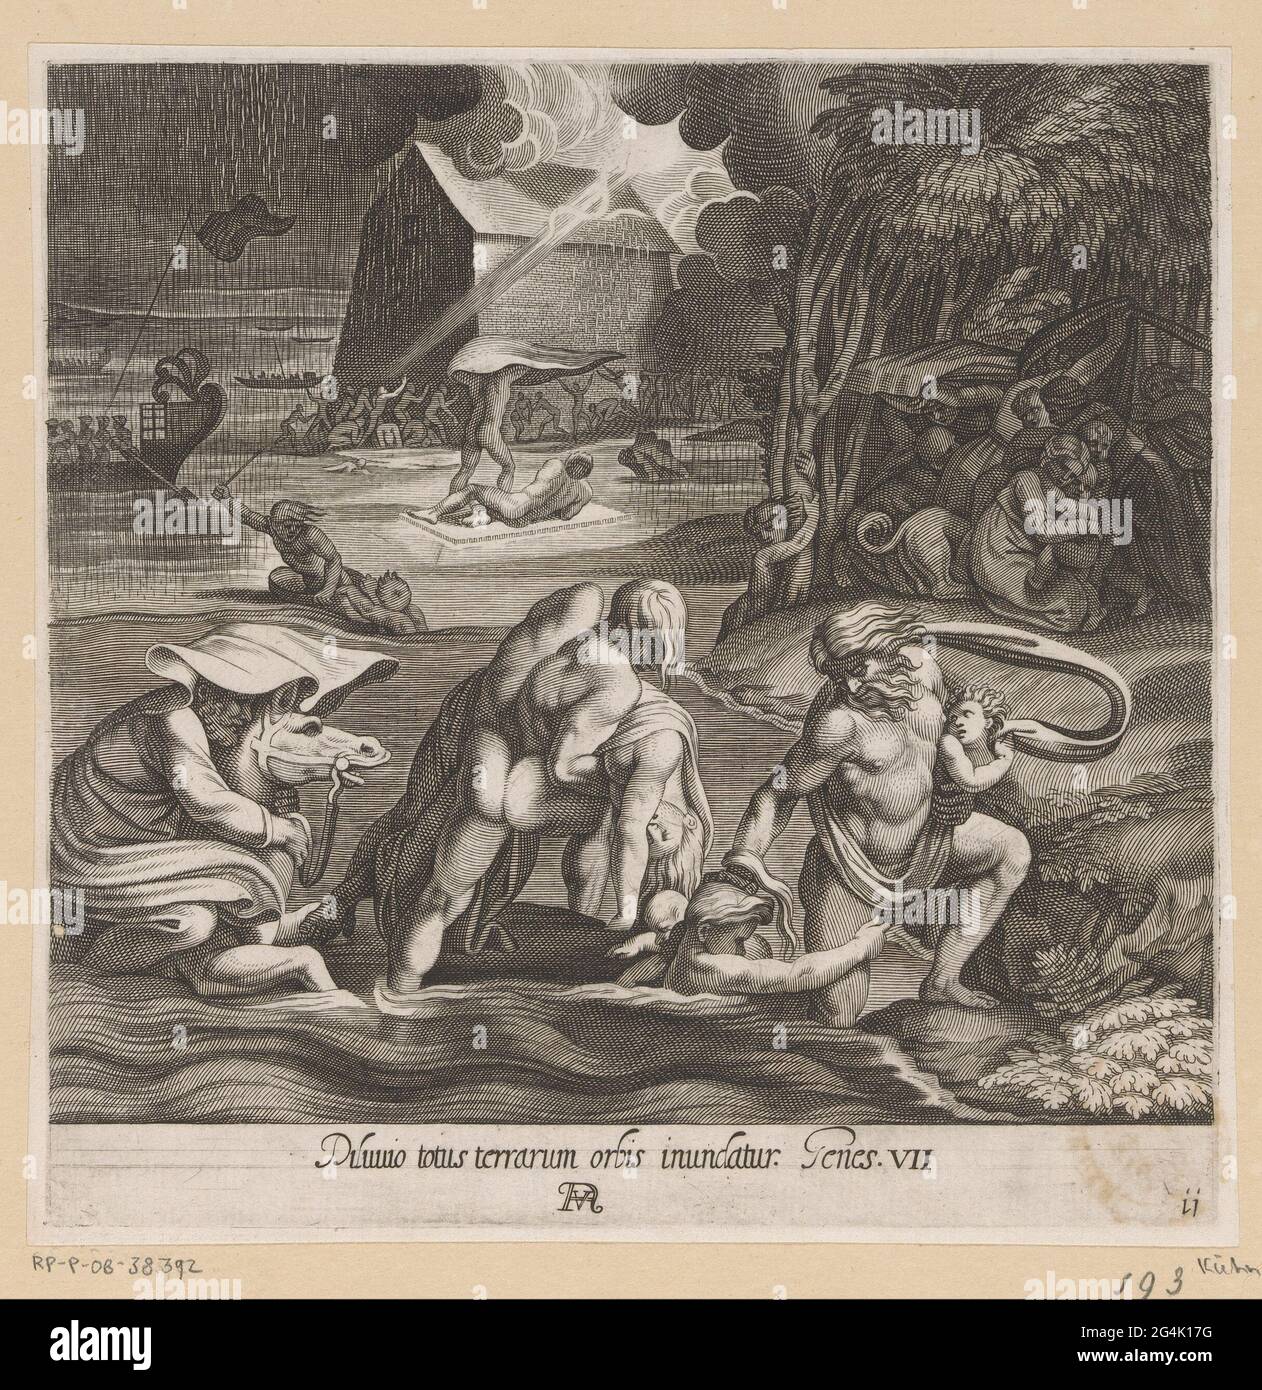 Hochwasser; Gemälde in der Loggia von Rafael; La Sacra Genesi. Menschen und Tiere flohen in aufsteigendes Wasser. Legal unter der Nummer: 11. Verweis auf Bibeltext am unteren Rand. Stockfoto